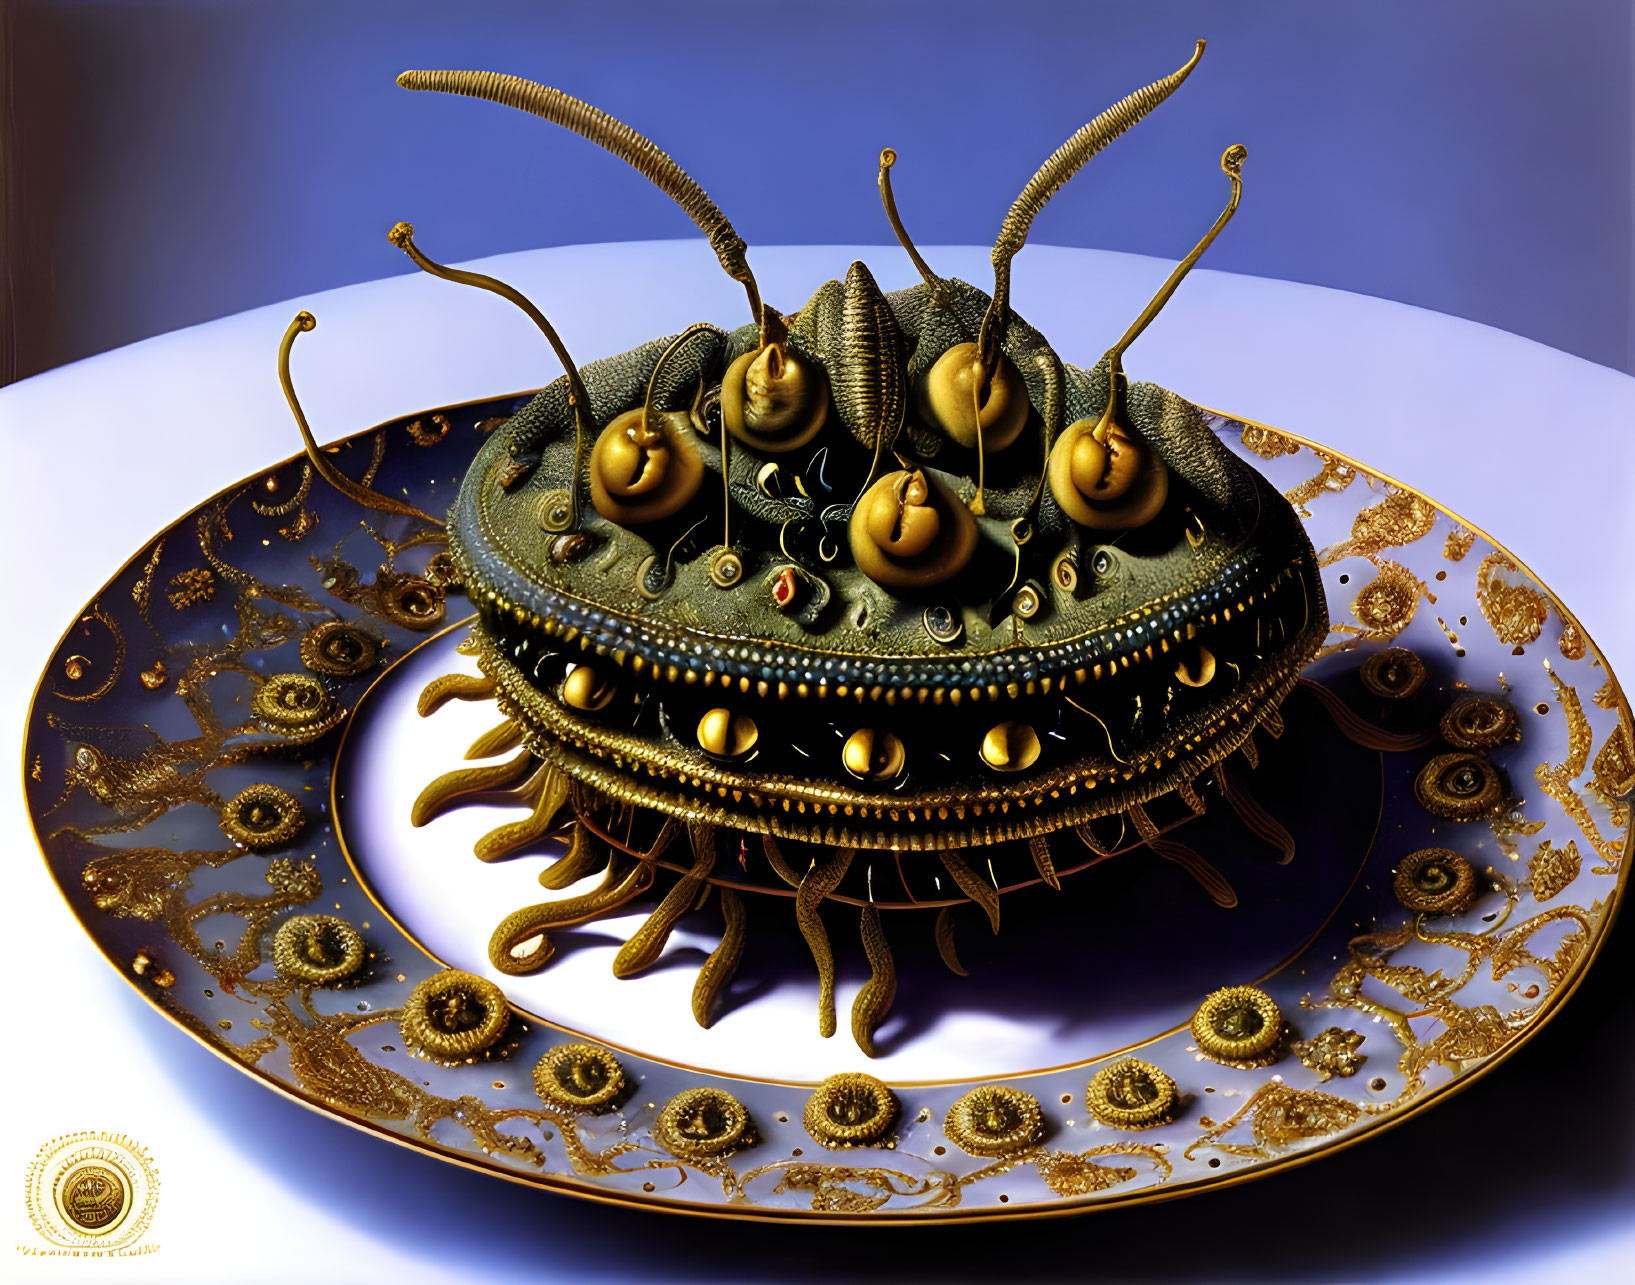 Fantastical mechanical sea urchin creature on golden plate